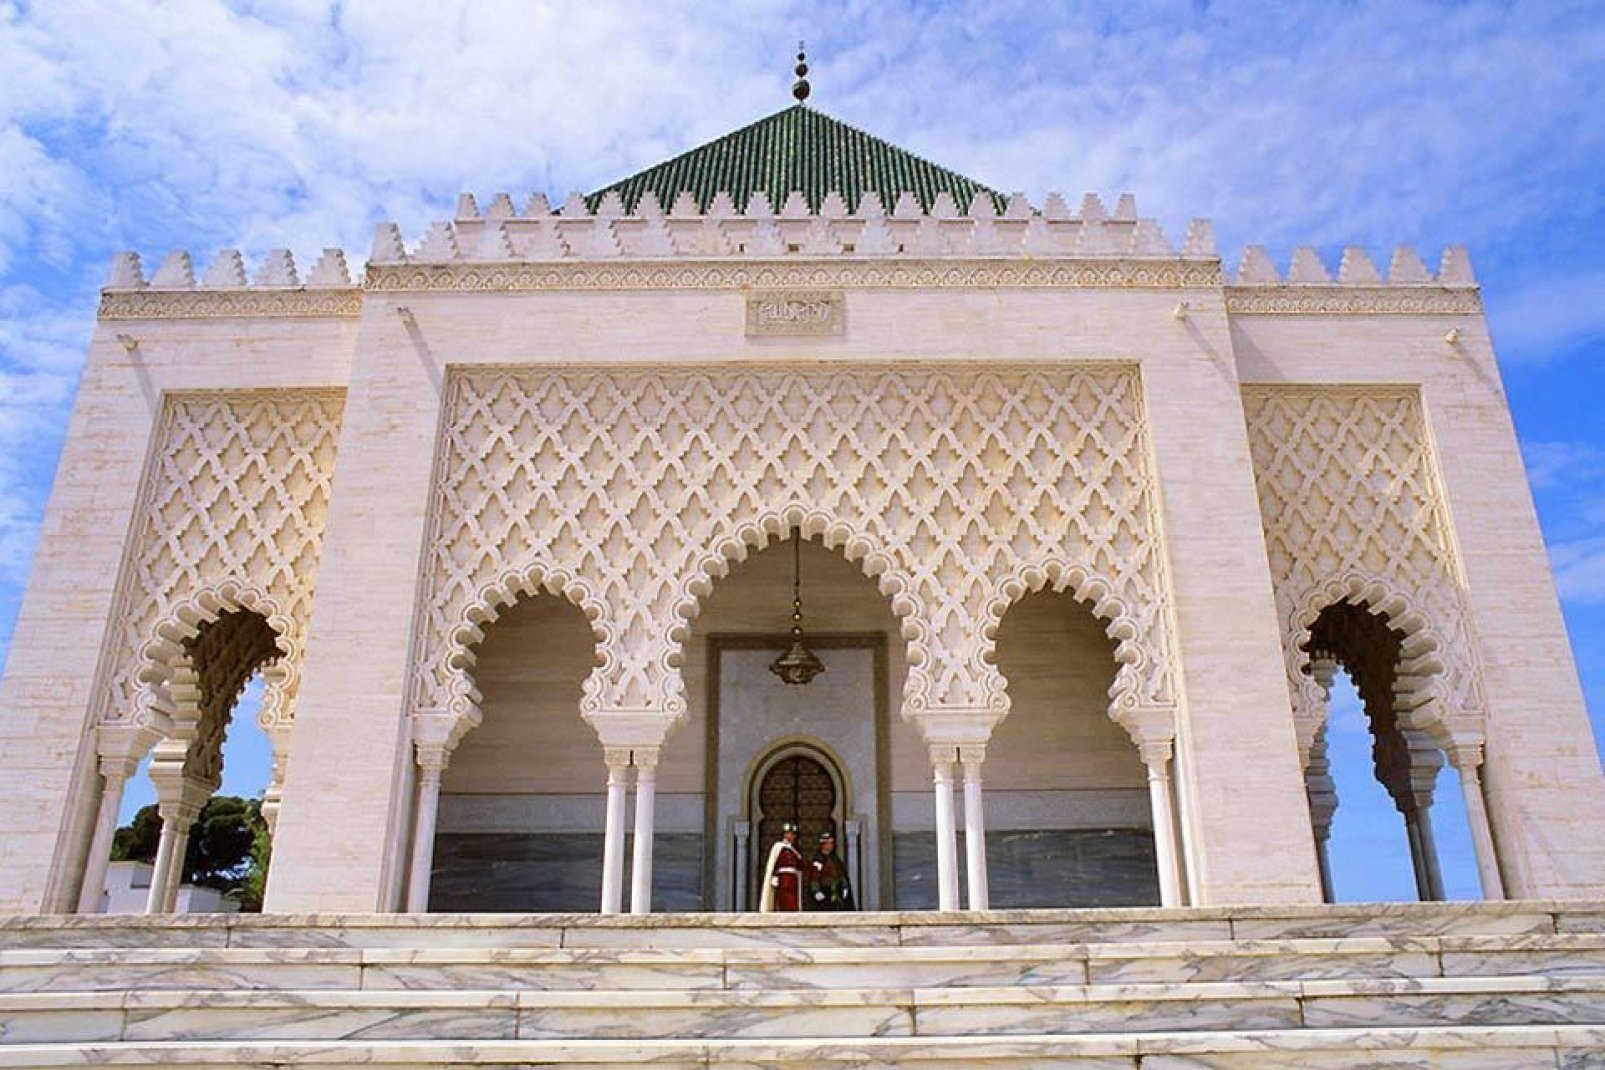 Lugar de culto que alberga la tumba del padre de la independencia, el sultán Mohammed V, el mausoleo del mismo nombre todo de mármol y de mosaicos es imponente.